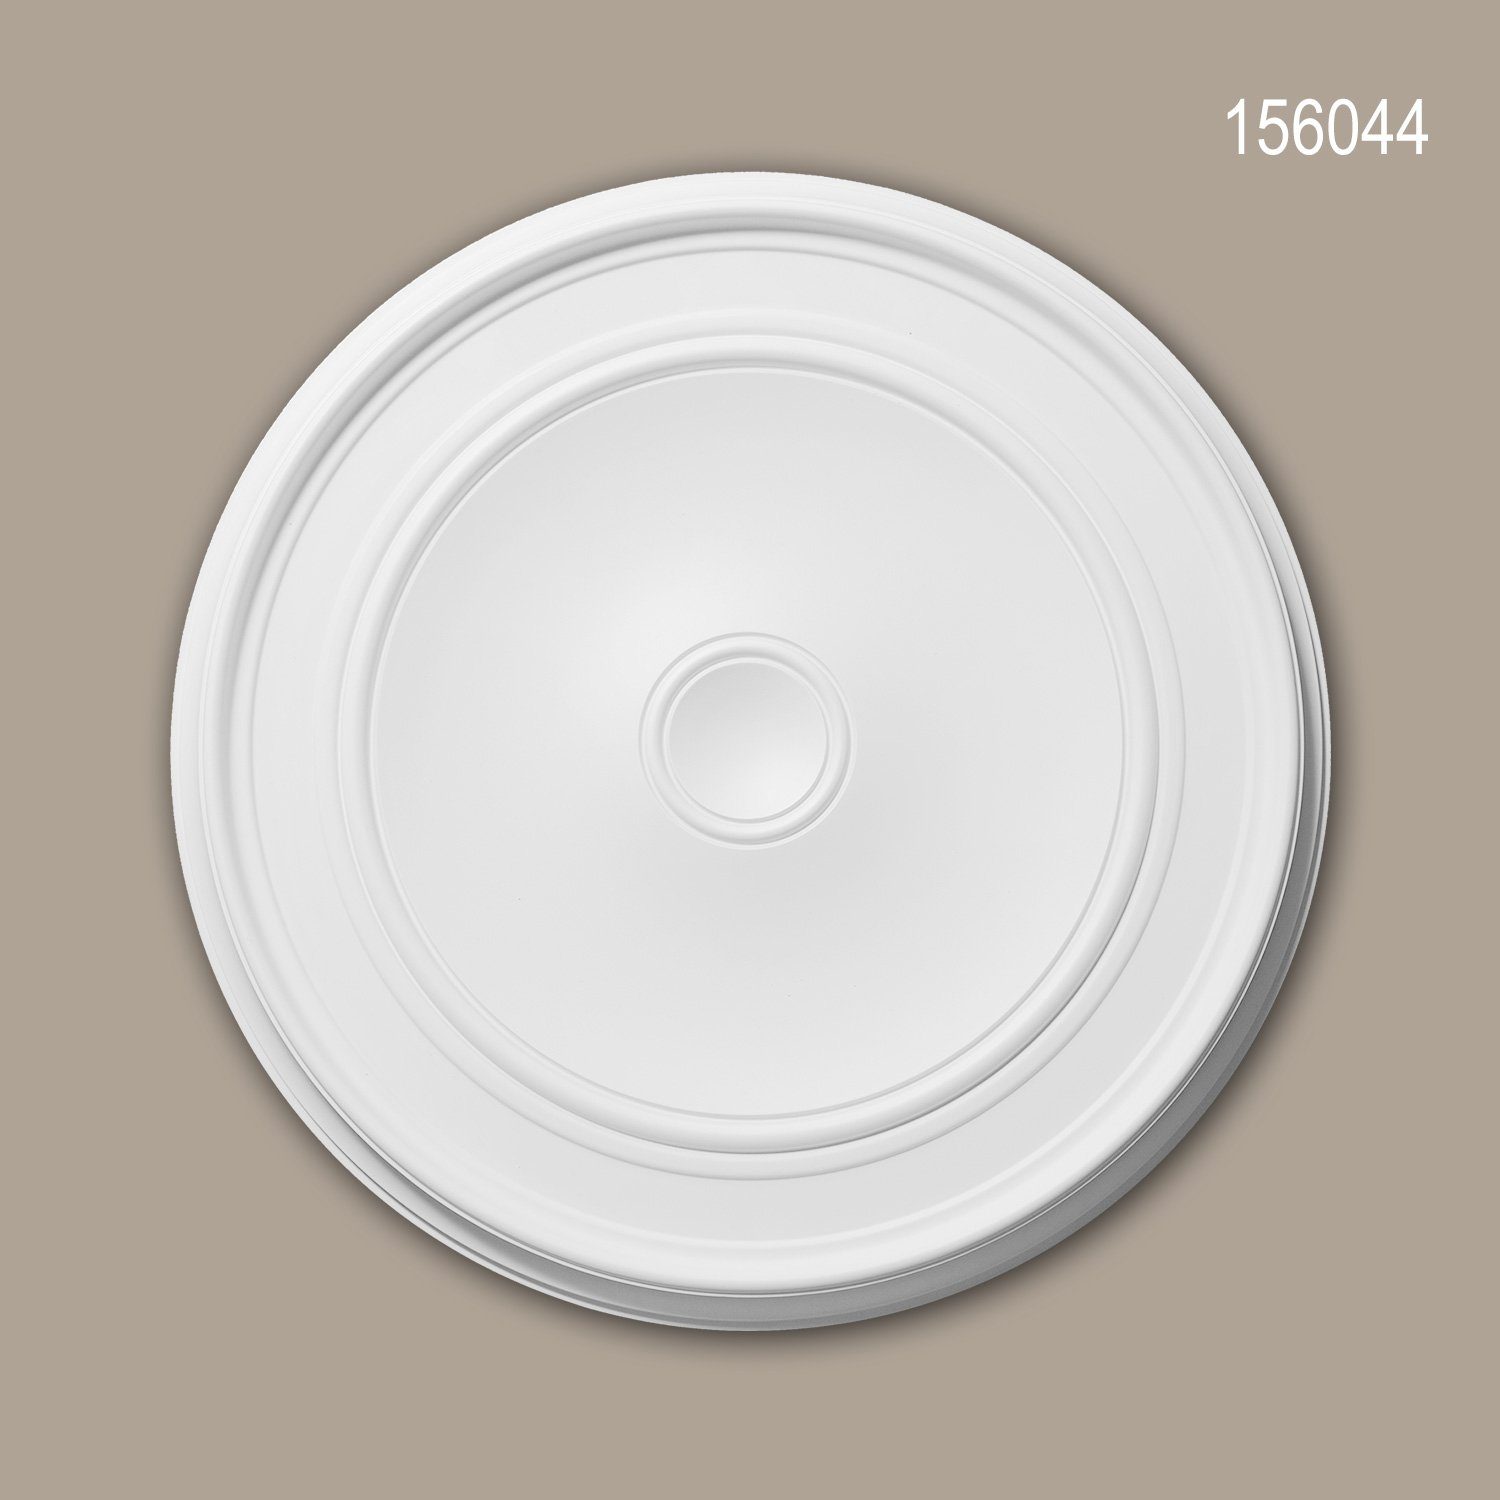 Profhome Decken-Rosette 156044 (Rosette, 1 St., Deckenrosette, Medallion, Stuckrosette, Deckenelement, Zierelement, Durchmesser 62 cm), weiß, vorgrundiert, Stil: Zeitlos / Klassisch